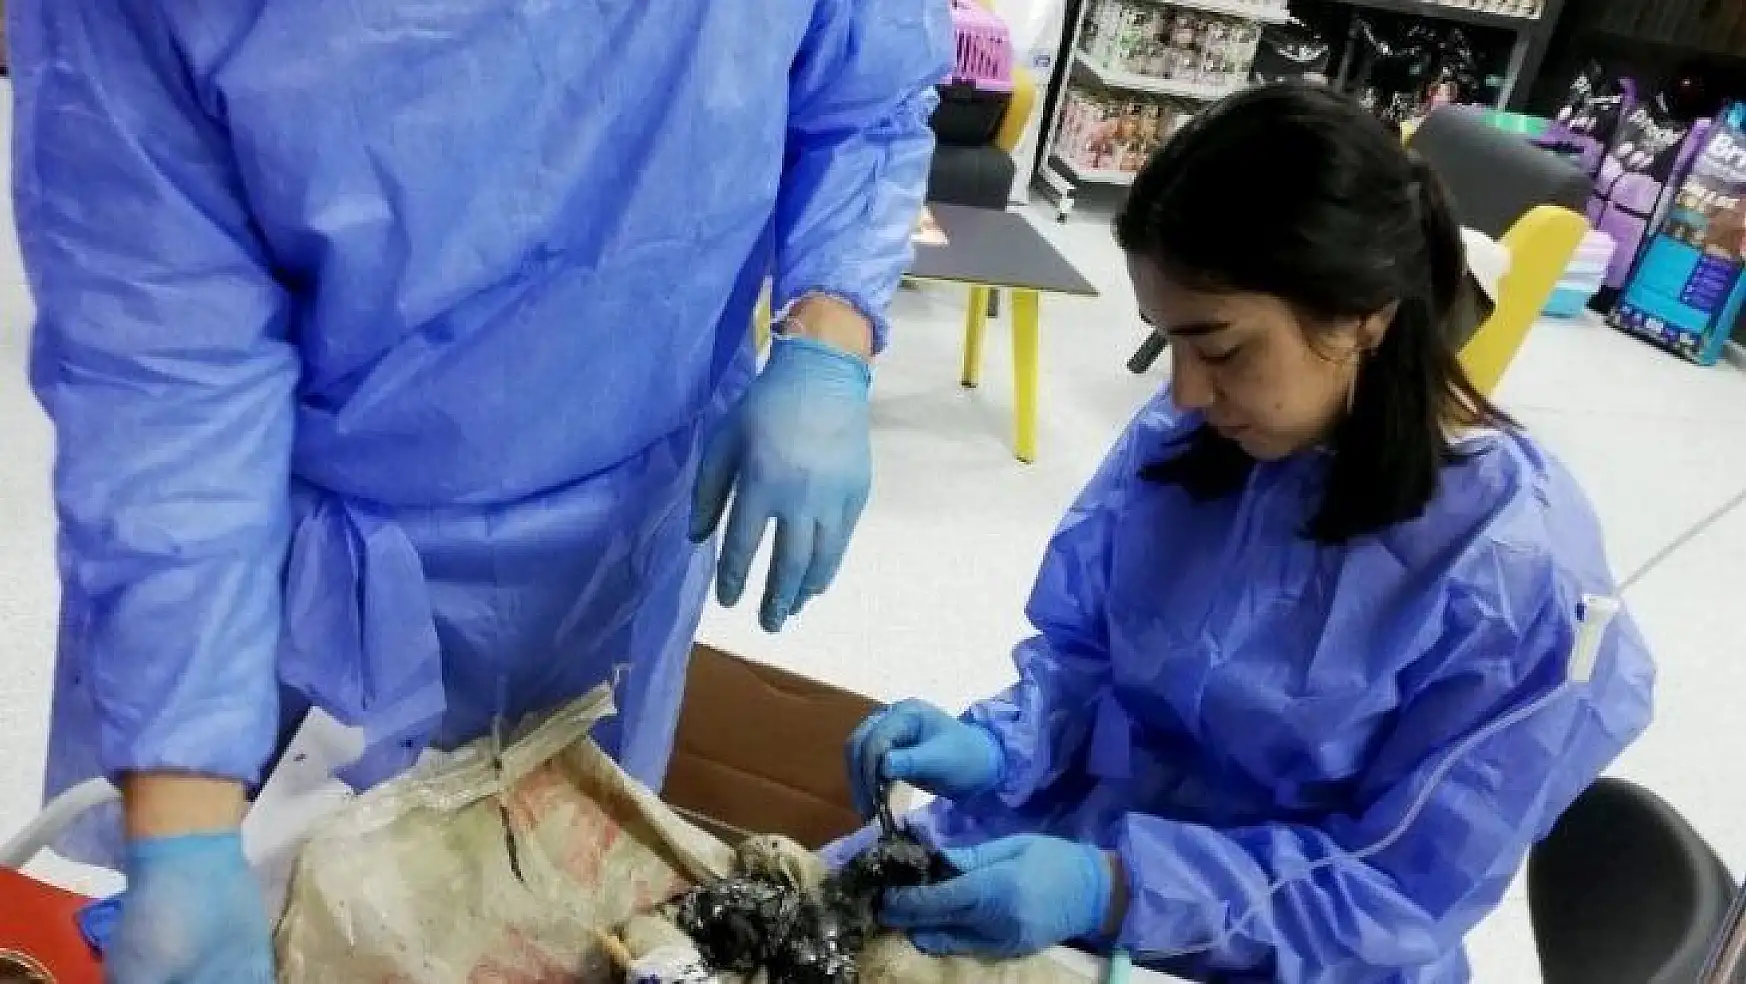 Ziftten kurtarılan kaplumbağalardan biri öldü, köpek ve diğerlerinin tedavisi sürüyor